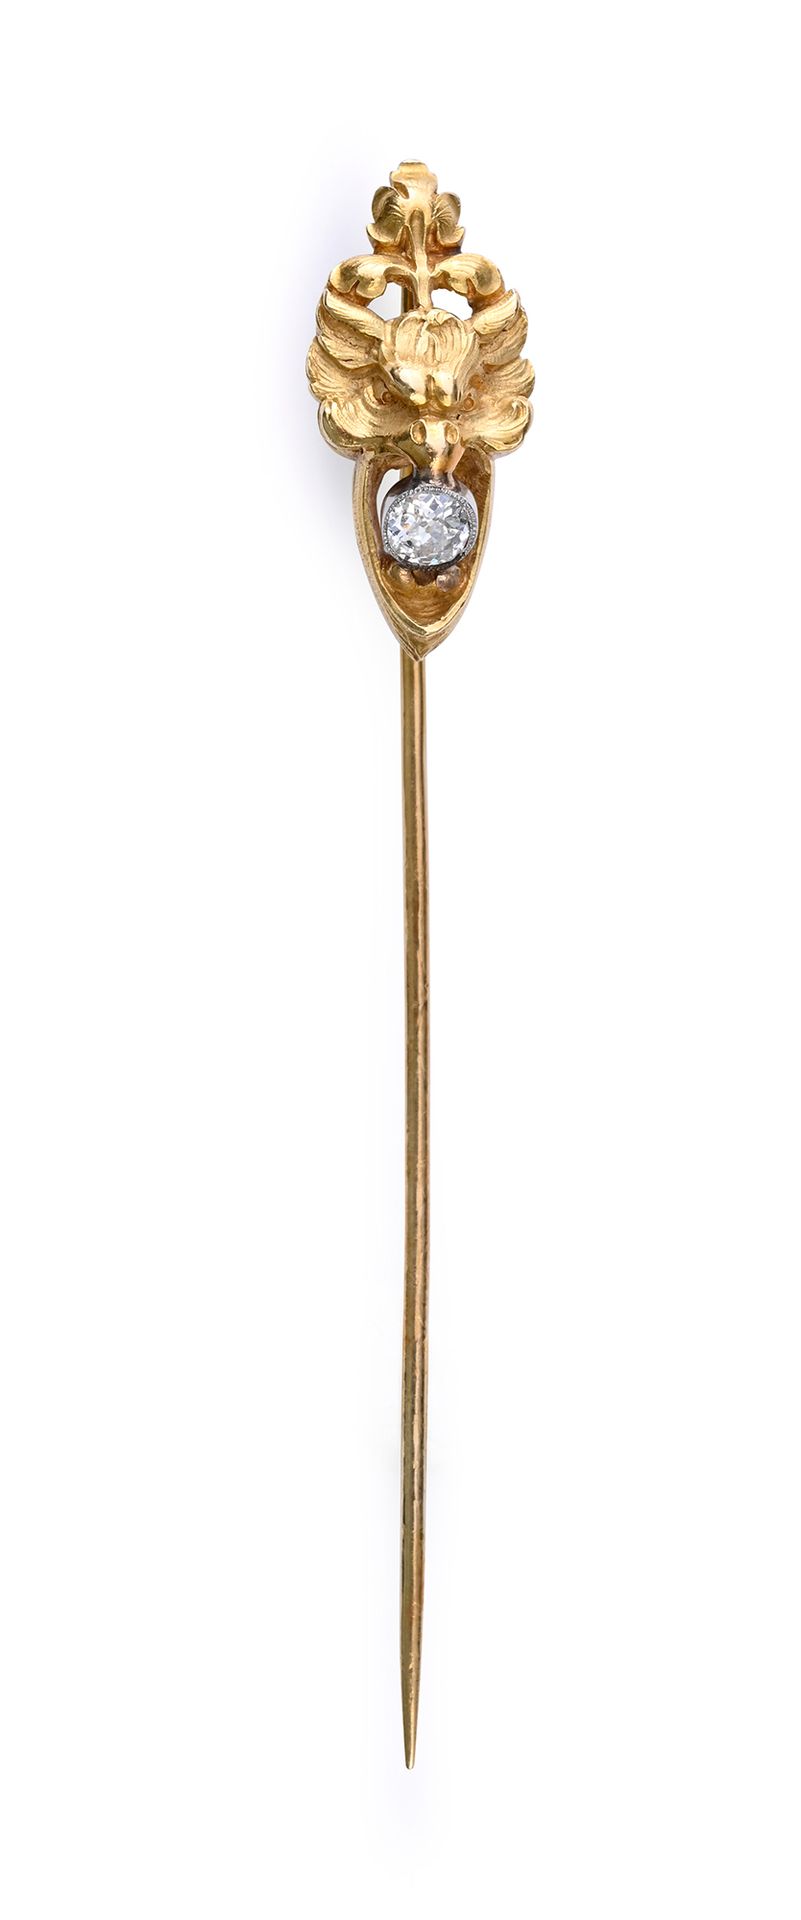 Null 18K（750 年）金 Tiepin 作品，描绘了一个精雕细琢的奇美拉的头部，其口中叼着一颗旧式切割钻石，以珠扣镶嵌，重约 0.20 克拉。有编号。
&hellip;